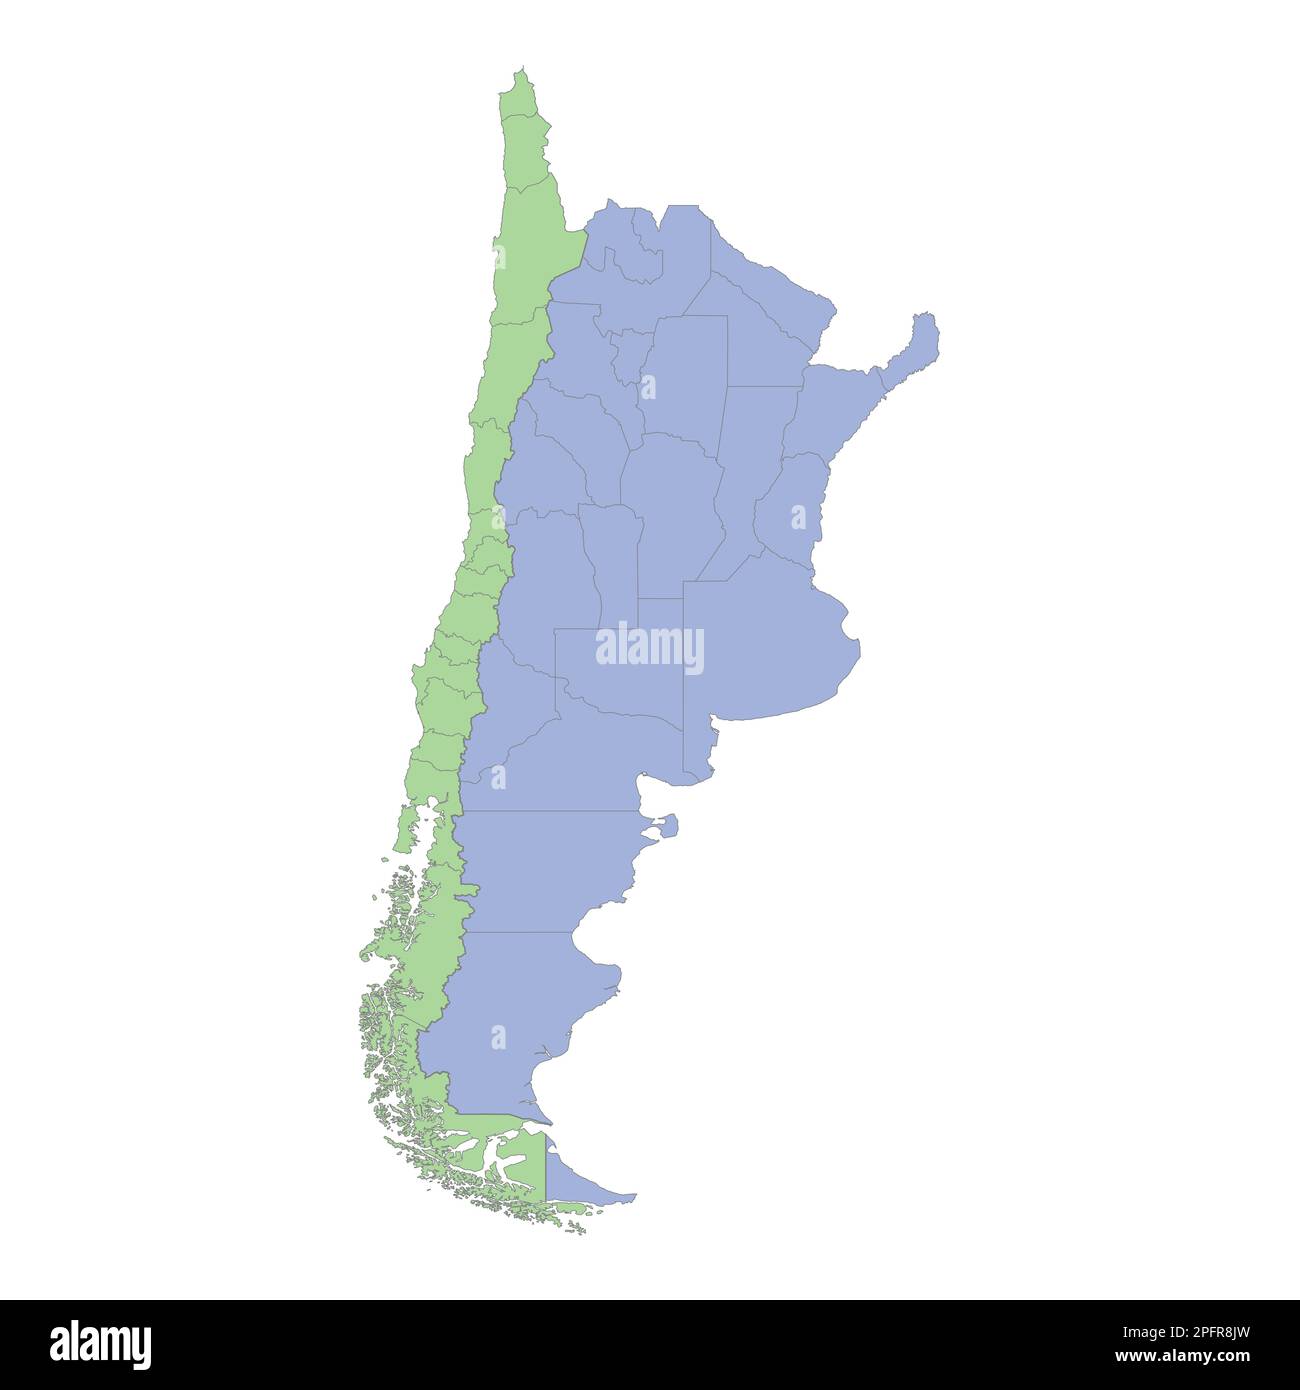 Mappa politica di alta qualità di Argentina e Cile con i confini delle regioni o province. Illustrazione vettoriale Illustrazione Vettoriale